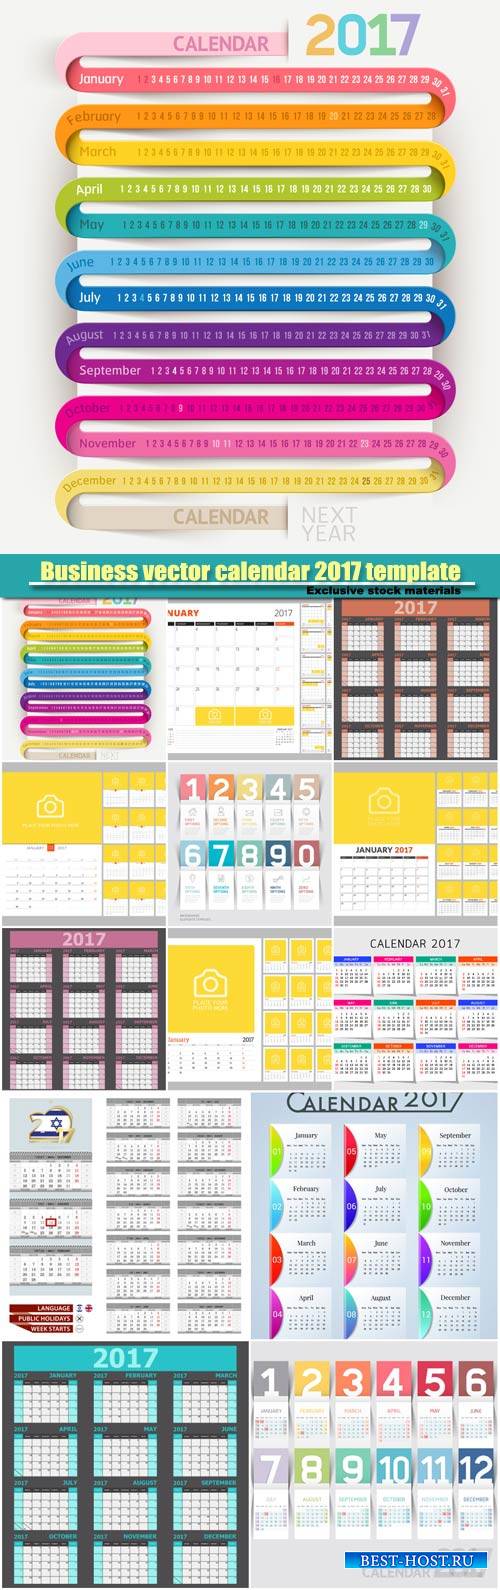 Business vector calendar 2017 template design